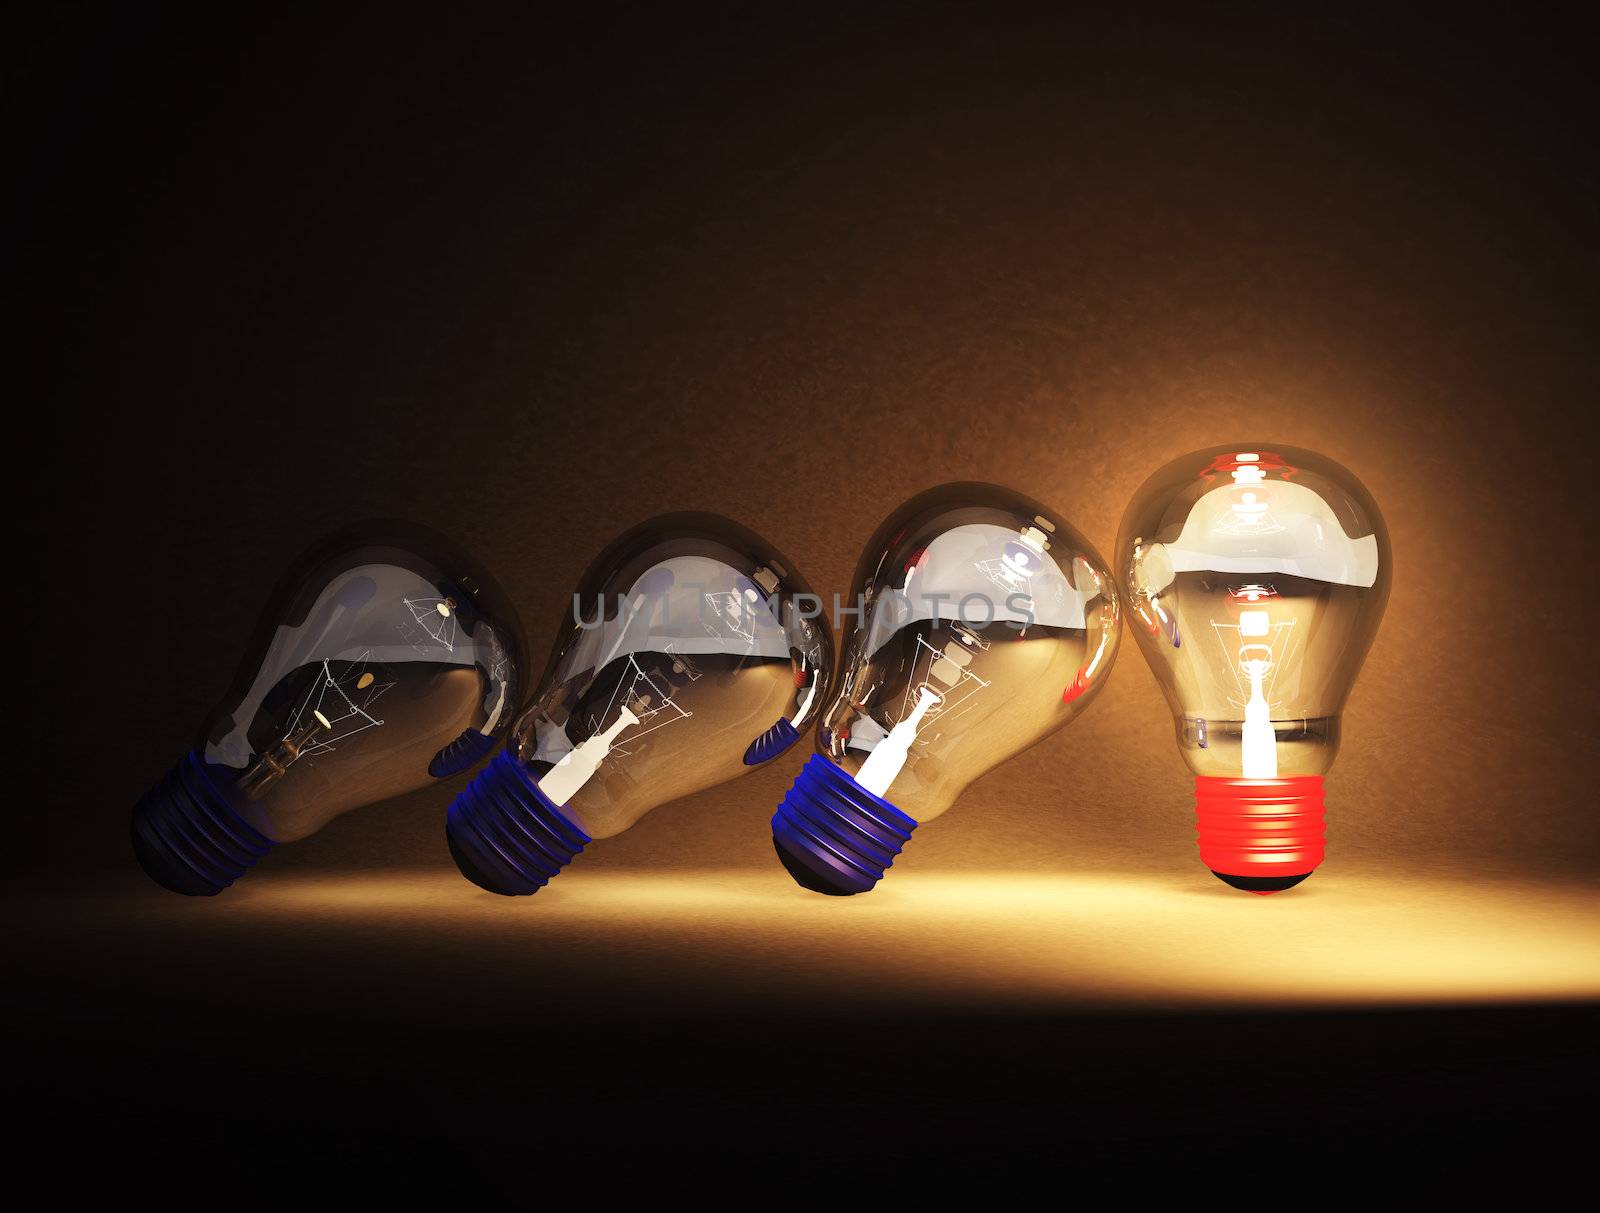 Light bulb is ideas by apichart